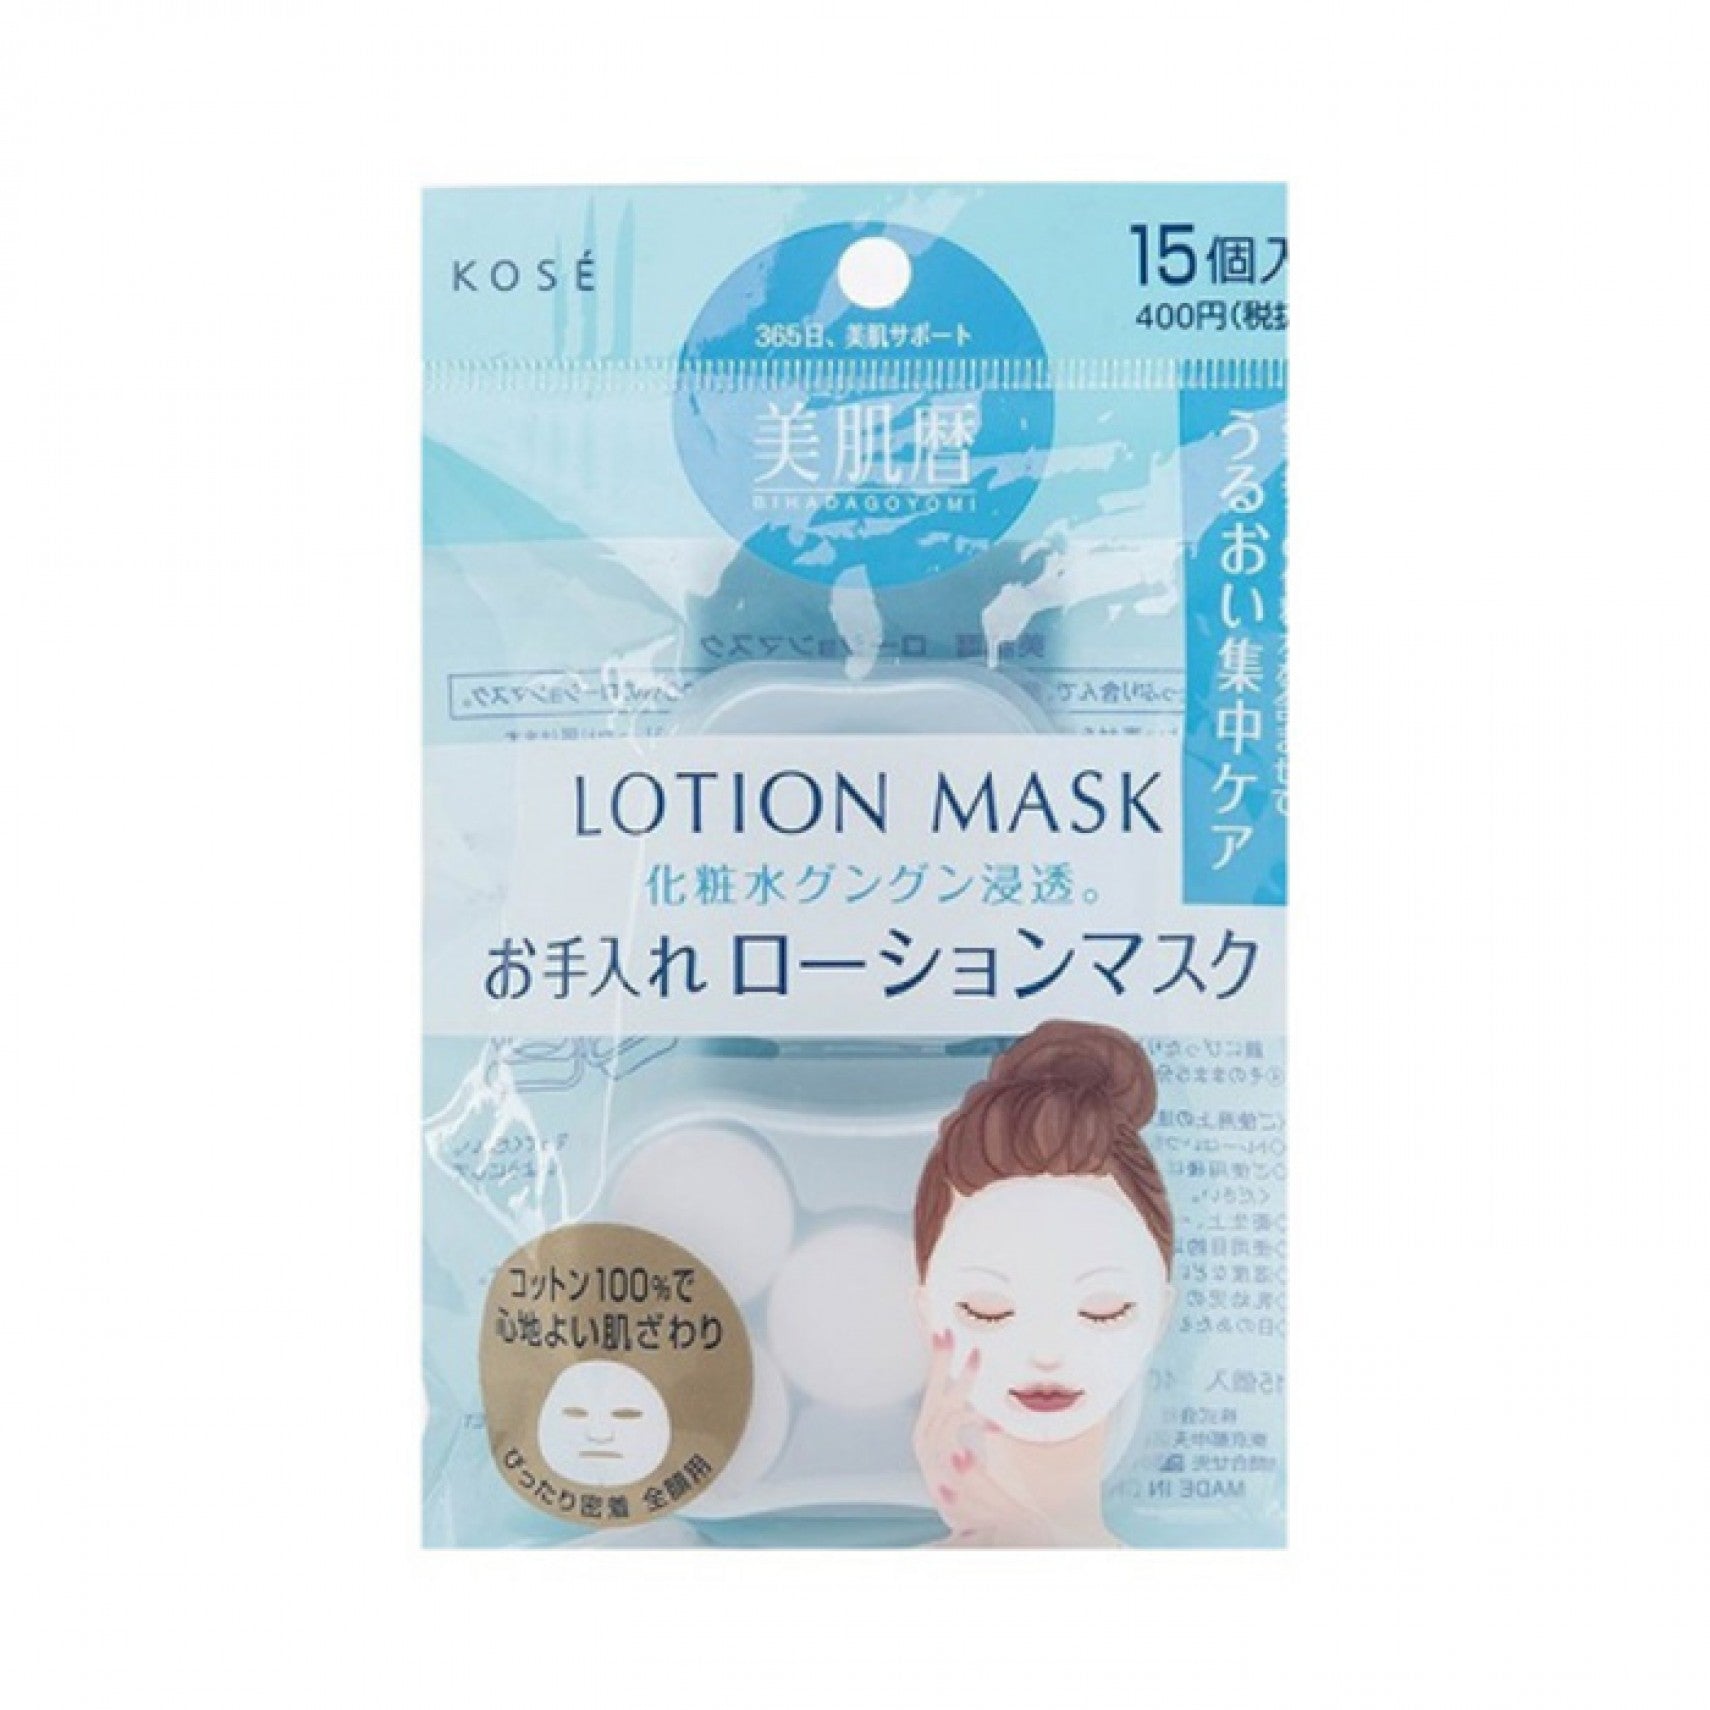 Kose Lotion Mask 15pcs Beauty Kose   